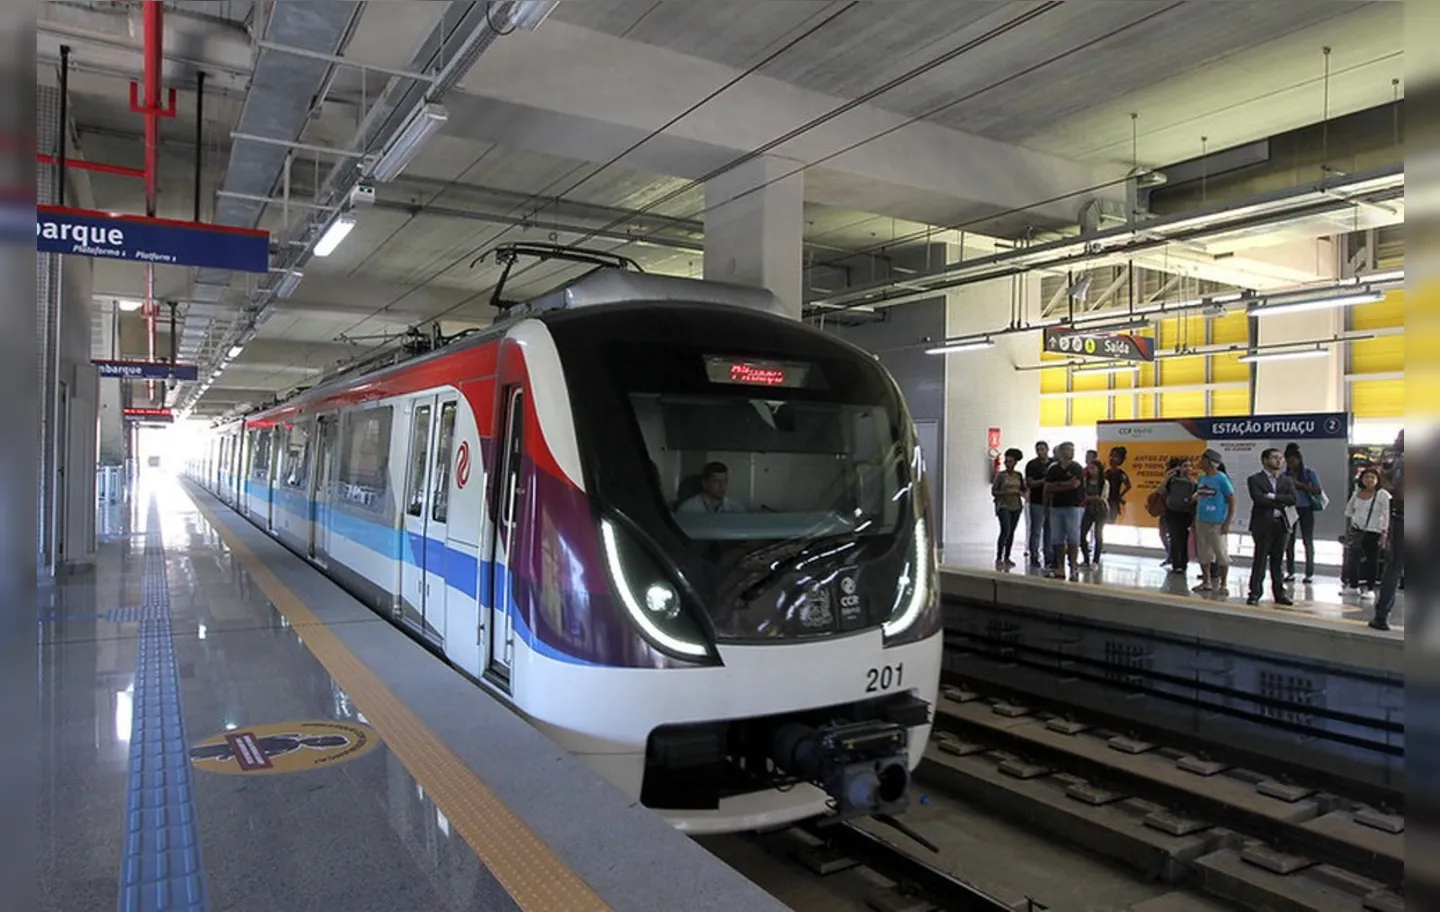 Metrô completa sete anos de operação | Foto: Camila Souza | GOVBA